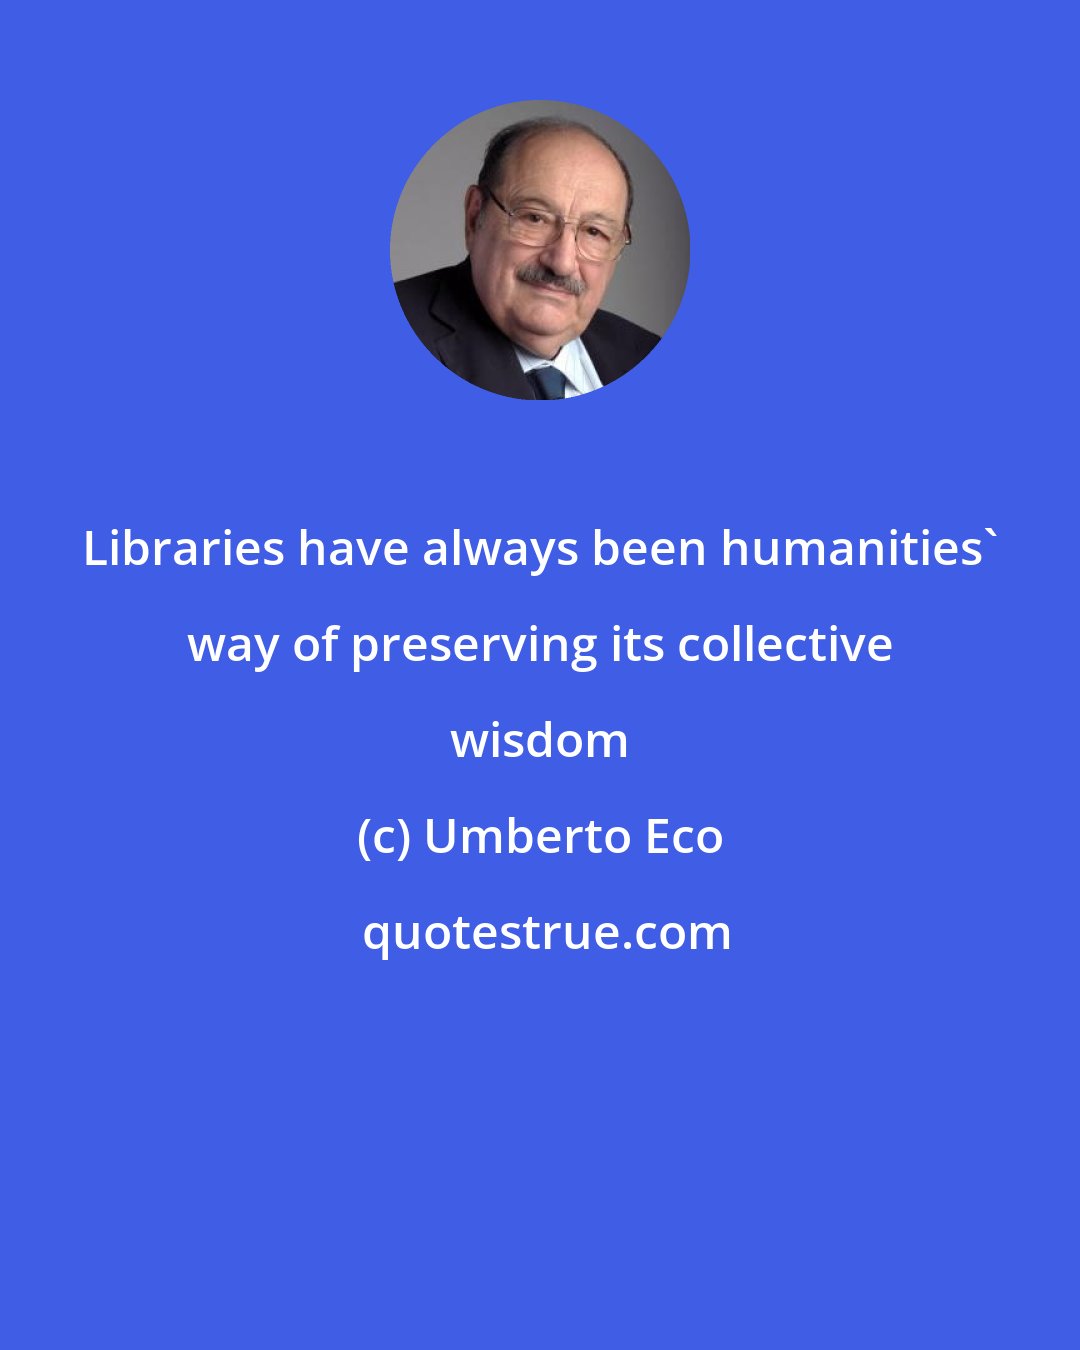 Umberto Eco: Libraries have always been humanities' way of preserving its collective wisdom